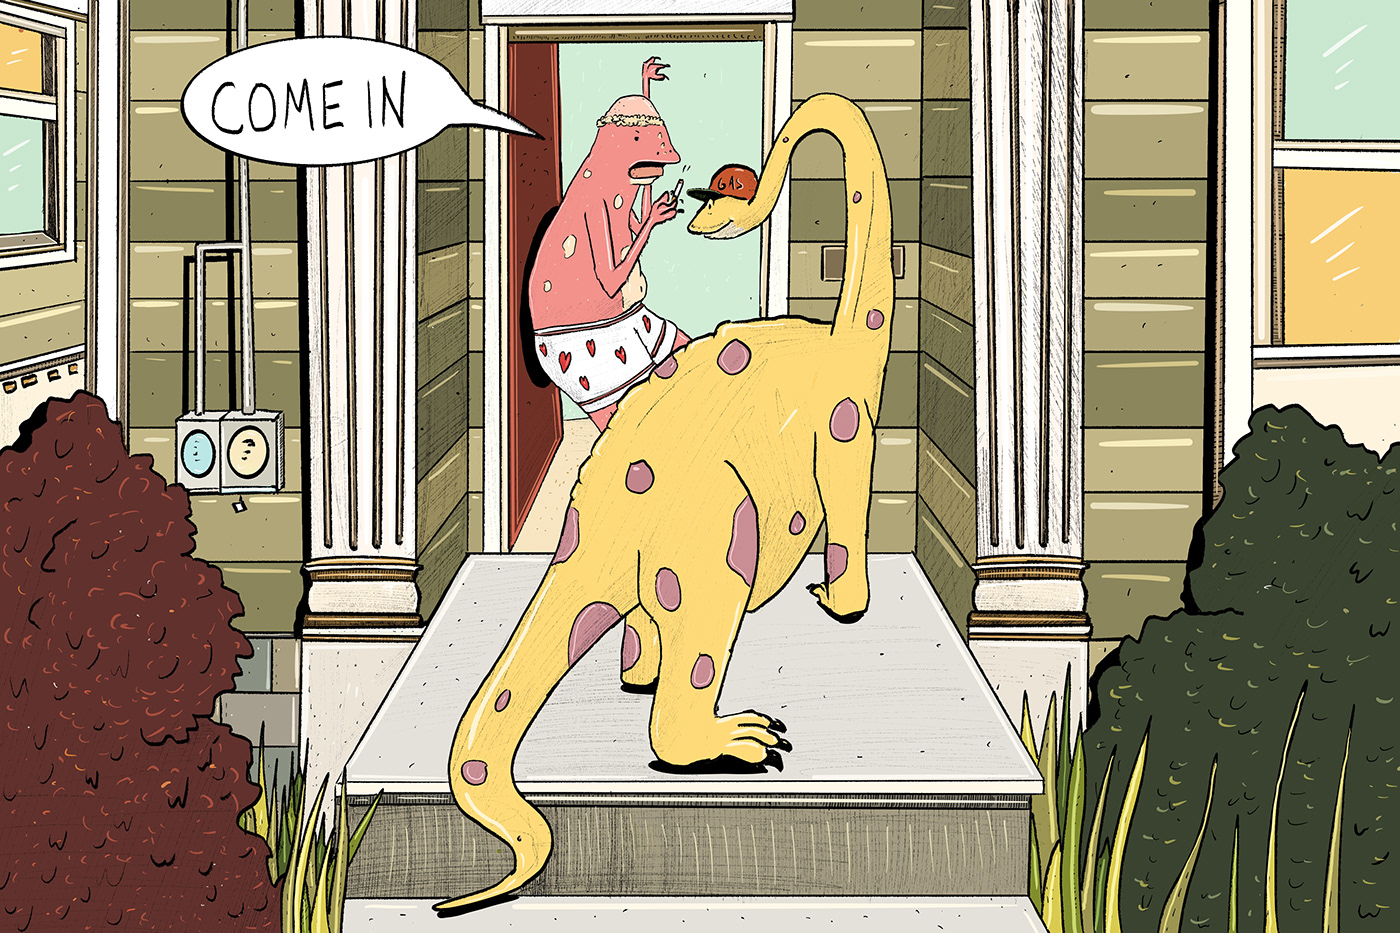 art comic Dinosaur narrative Gas humor DigitalIllustration